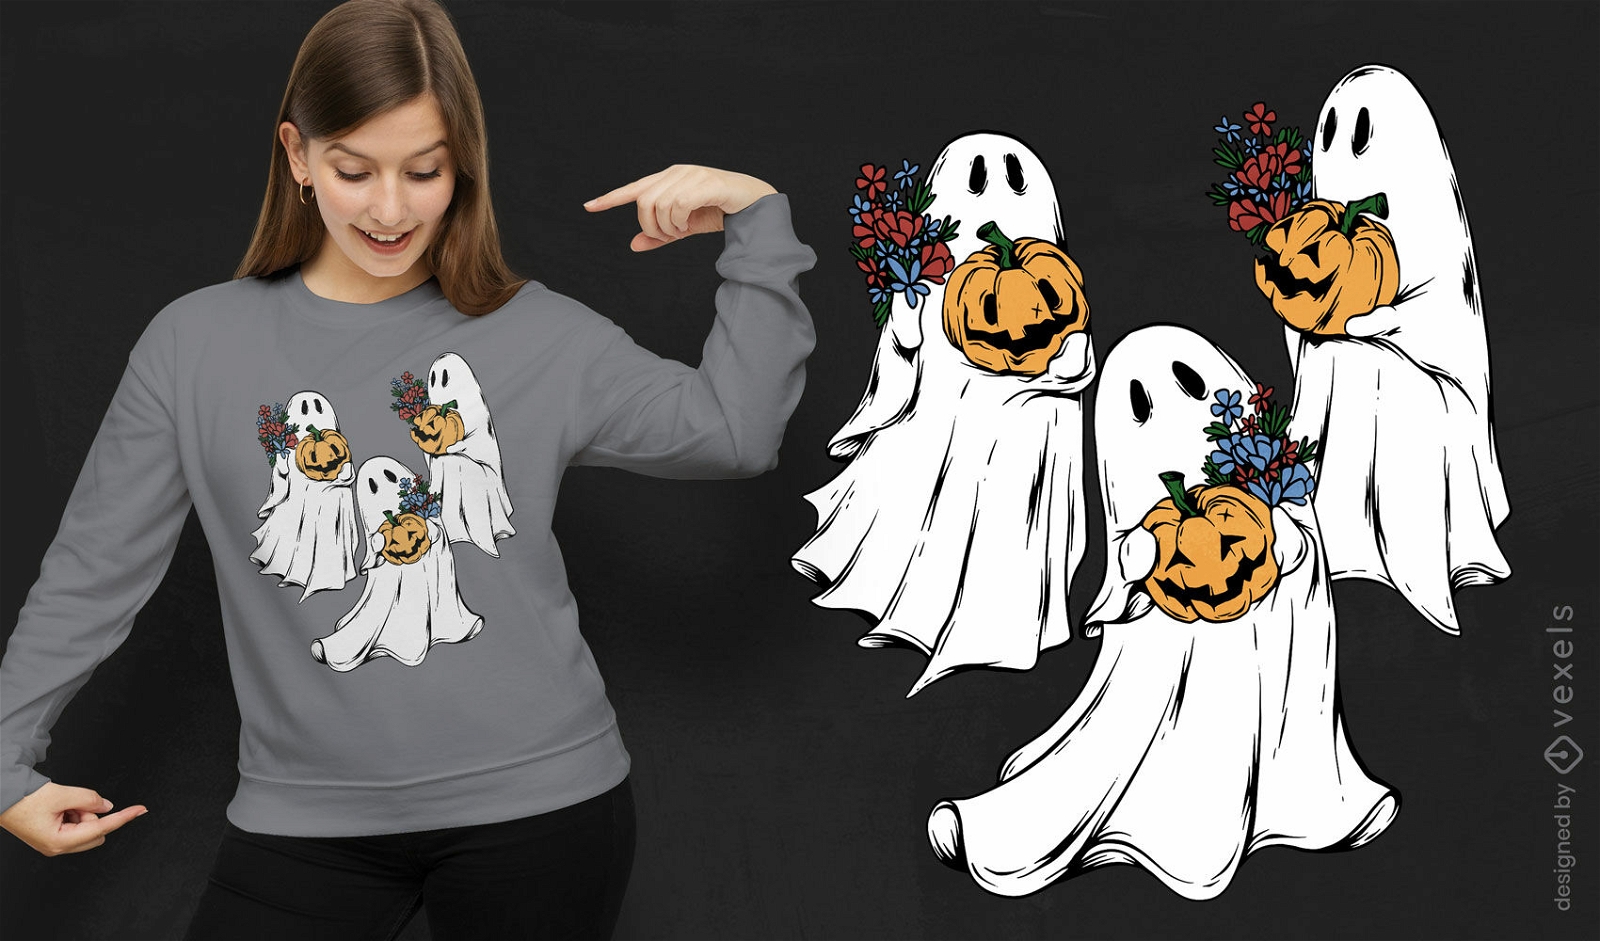 Ghost and pumpkins halloween t-shirt design